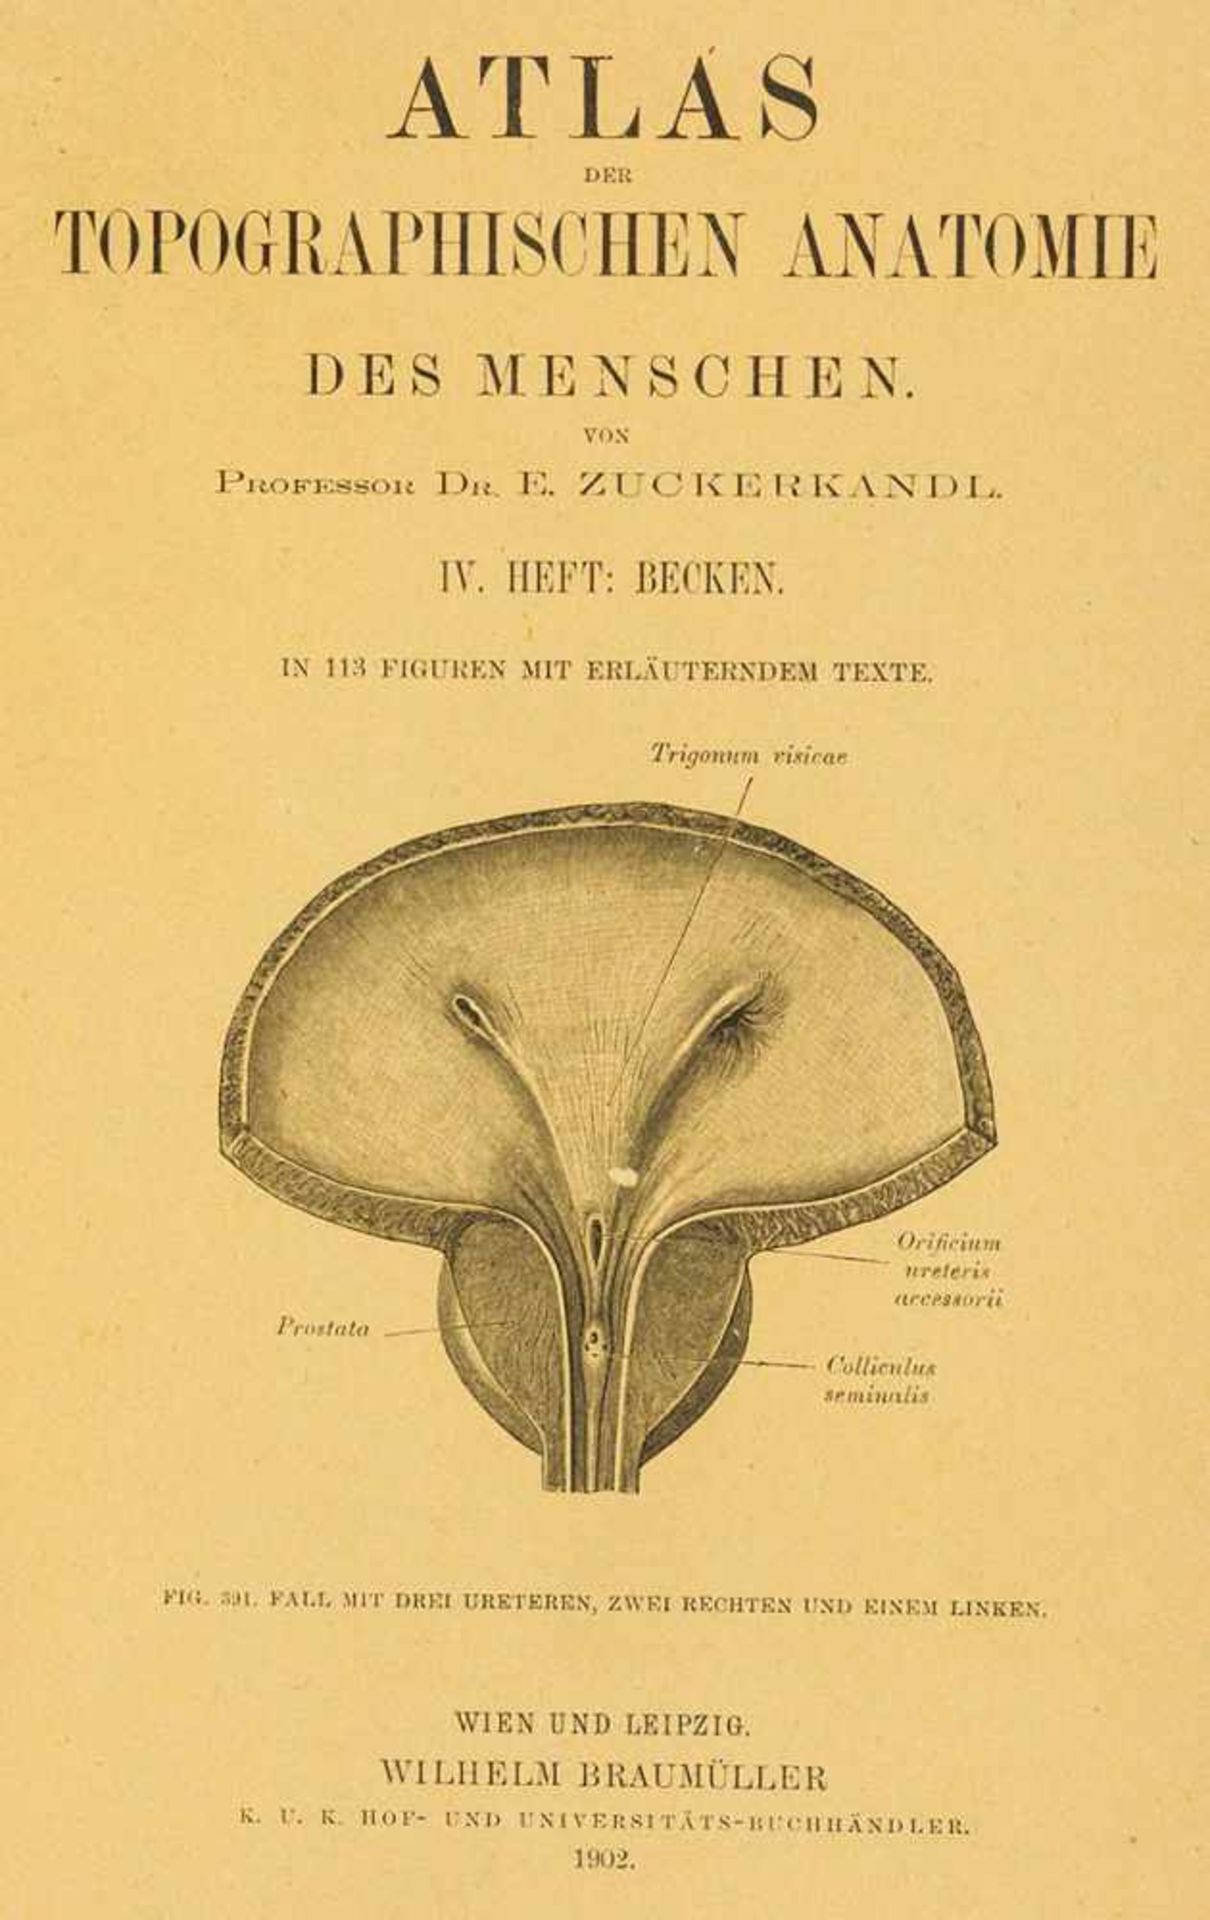 Anatomie. – E. Zuckerkandl. Atlas der topographischen Anatomie des Menschen. 5 Bde. in 2. Wien u.